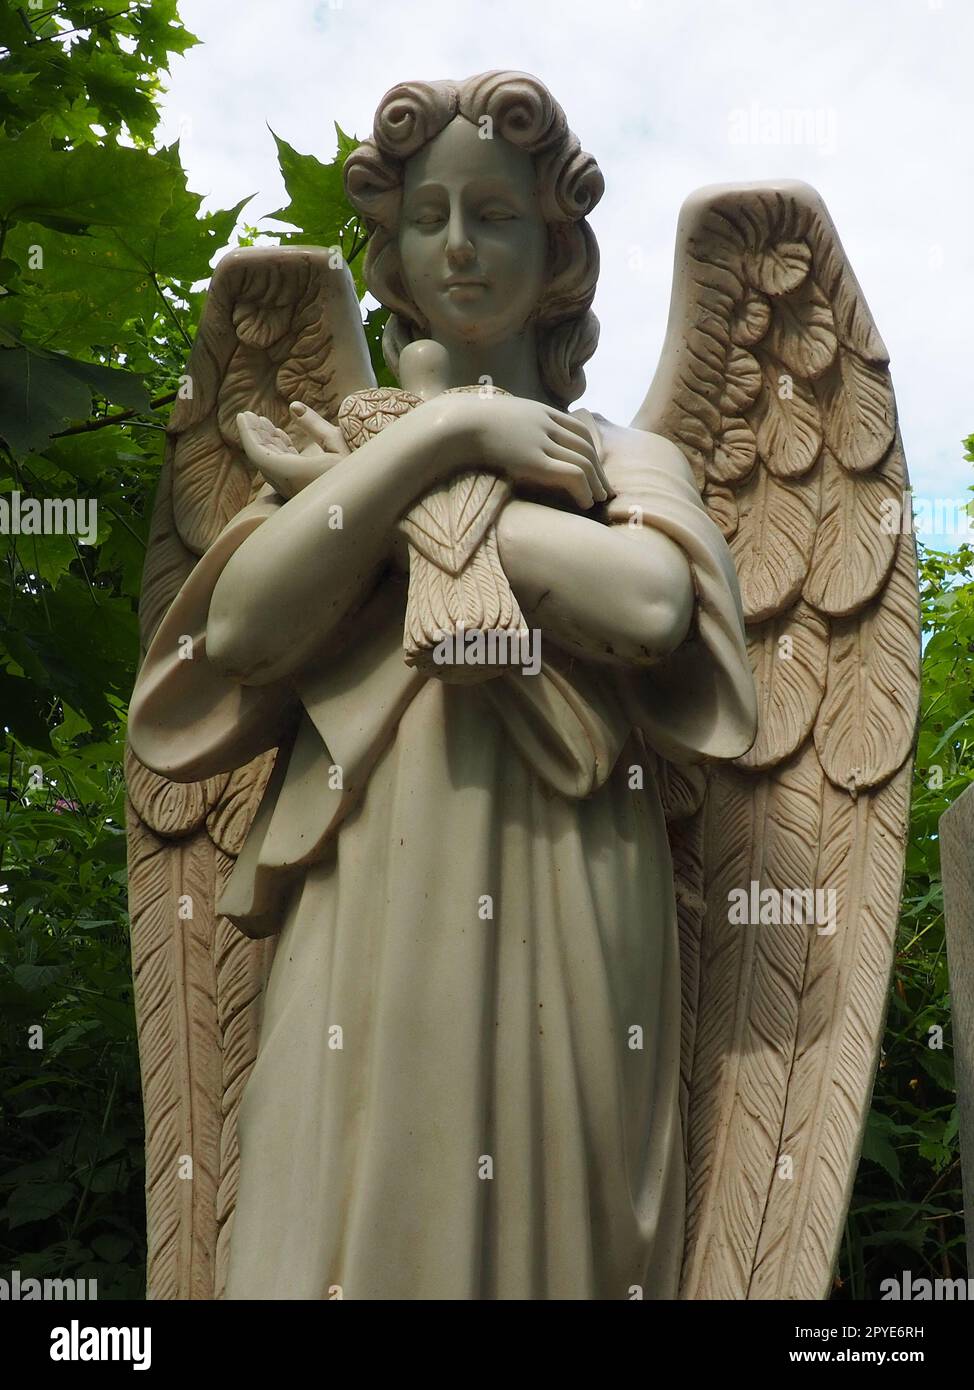 Ein Engel mit einer Taube. Skulptur auf dem Friedhof. Die Gestalt eines Engels mit Flügeln, der einen Vogel in den Armen hält. Klagen für den Verstorbenen. Grabstein-Denkmal auf einem christlichen Grab. Traurigkeit und Trauer Stockfoto